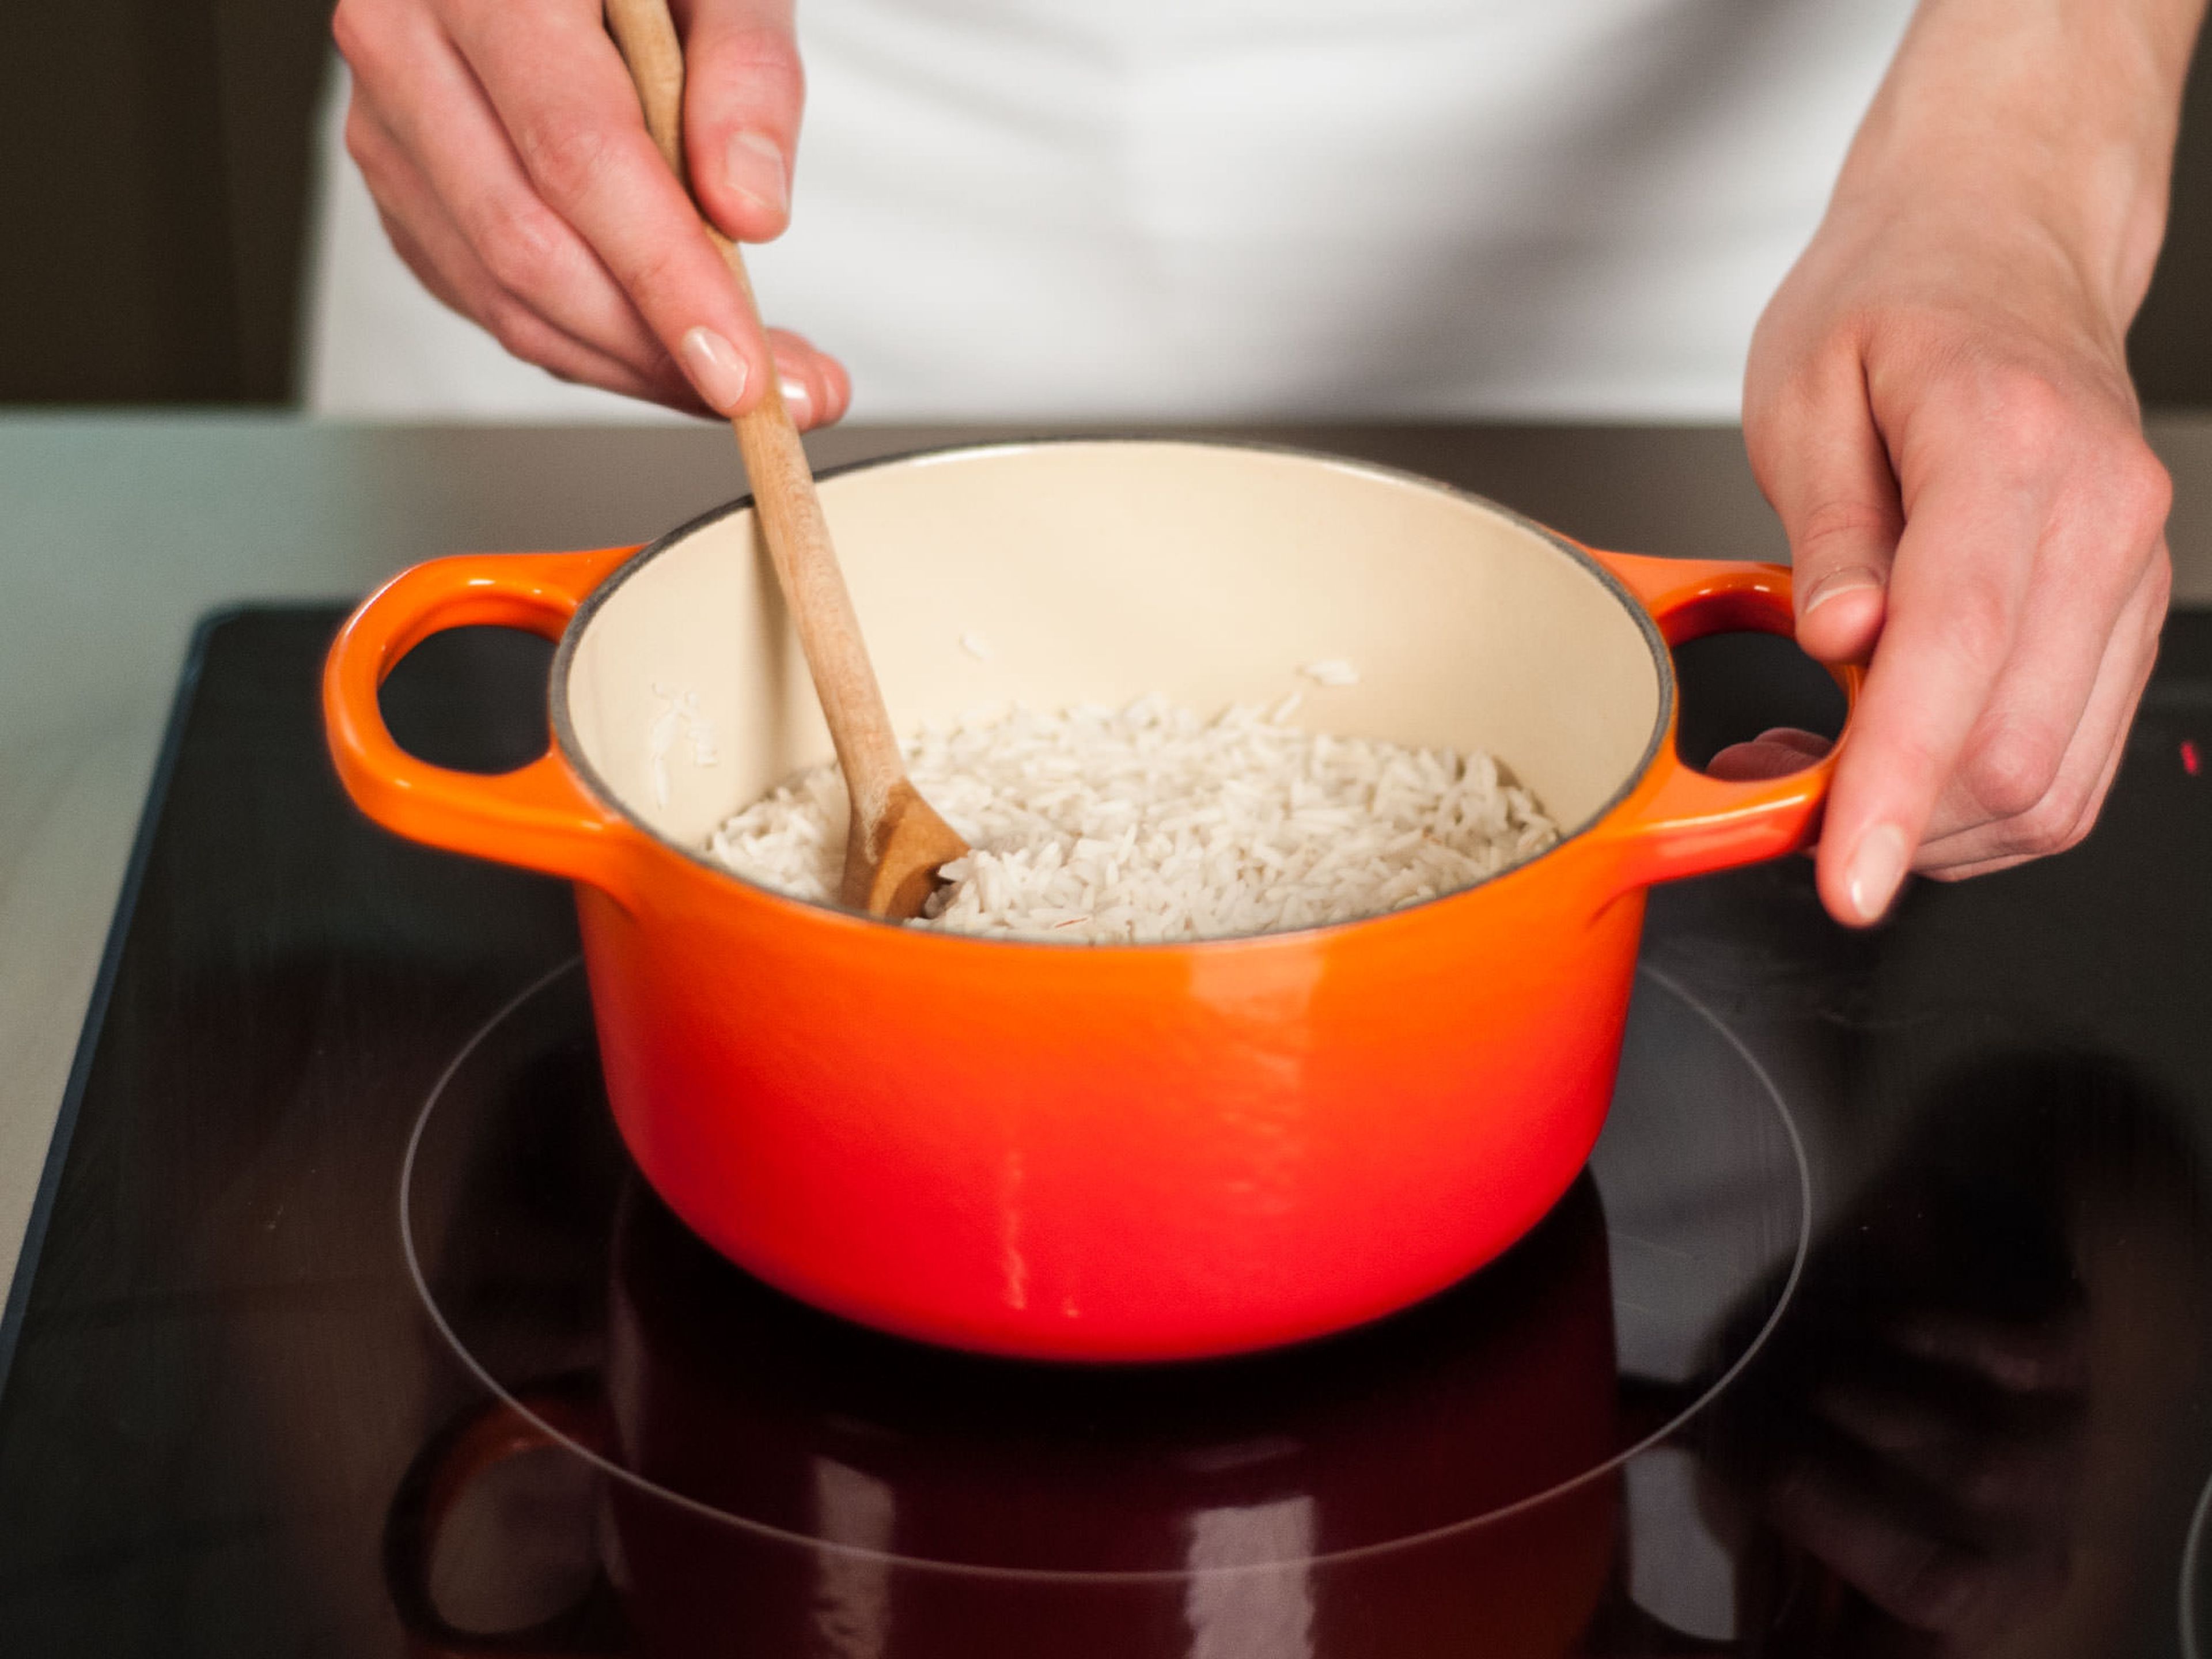 Reis, Wasser und eine Prise Salz in einen Topf geben. Zum Kochen bringen, Hitze reduzieren und für ca. 10 – 15 Min. köcheln lassen bis der Reis fertig ist. Wenn nötig überschüssiges Wasser abgießen.